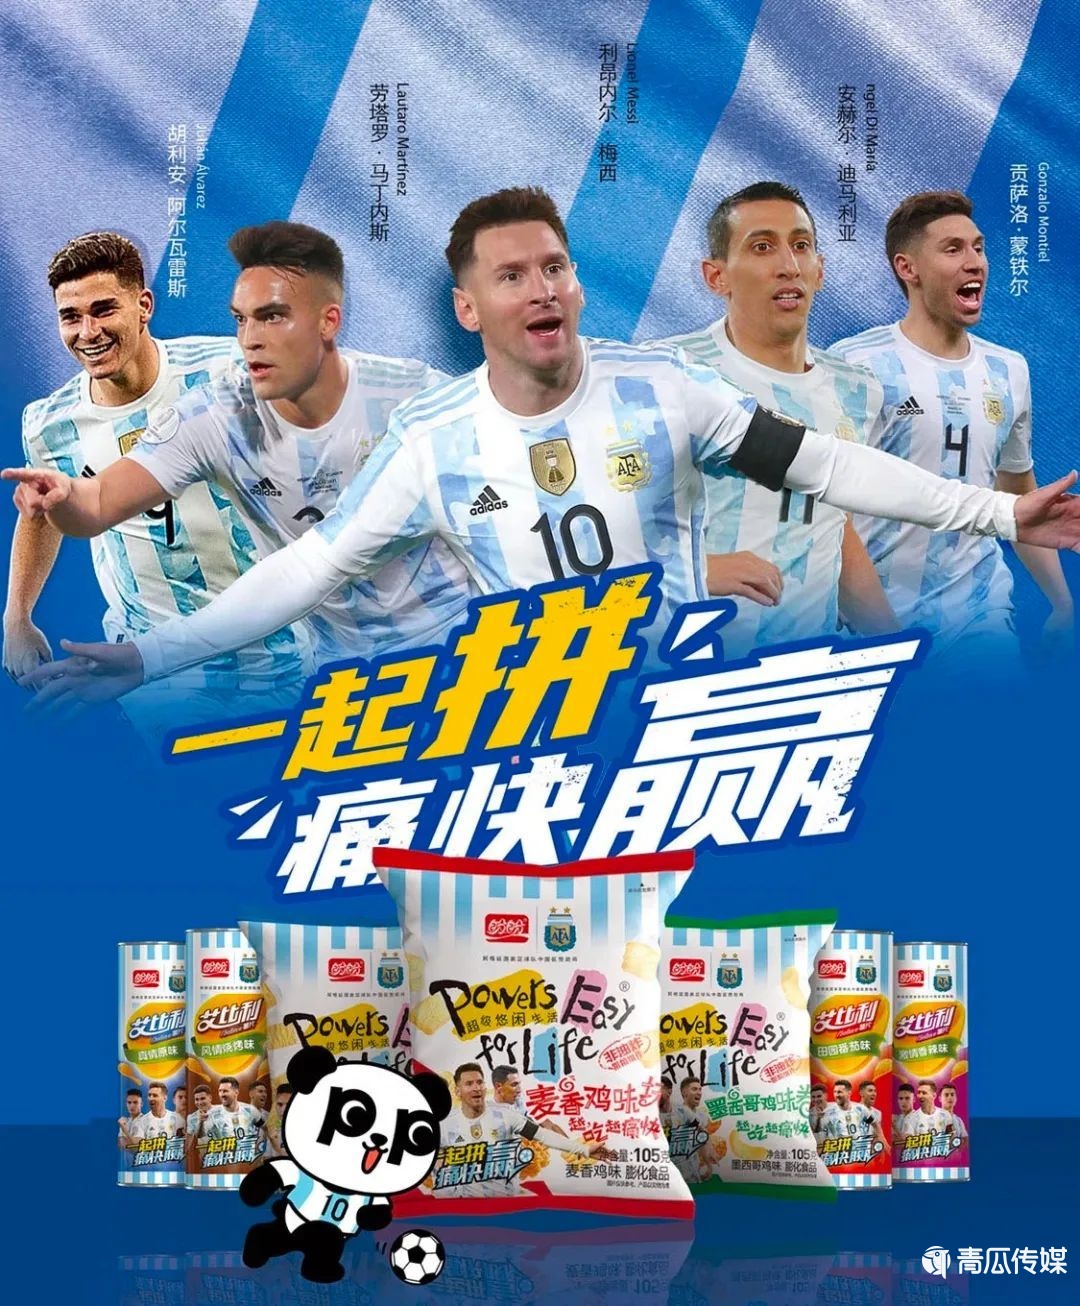 世界杯食品品牌营销策略